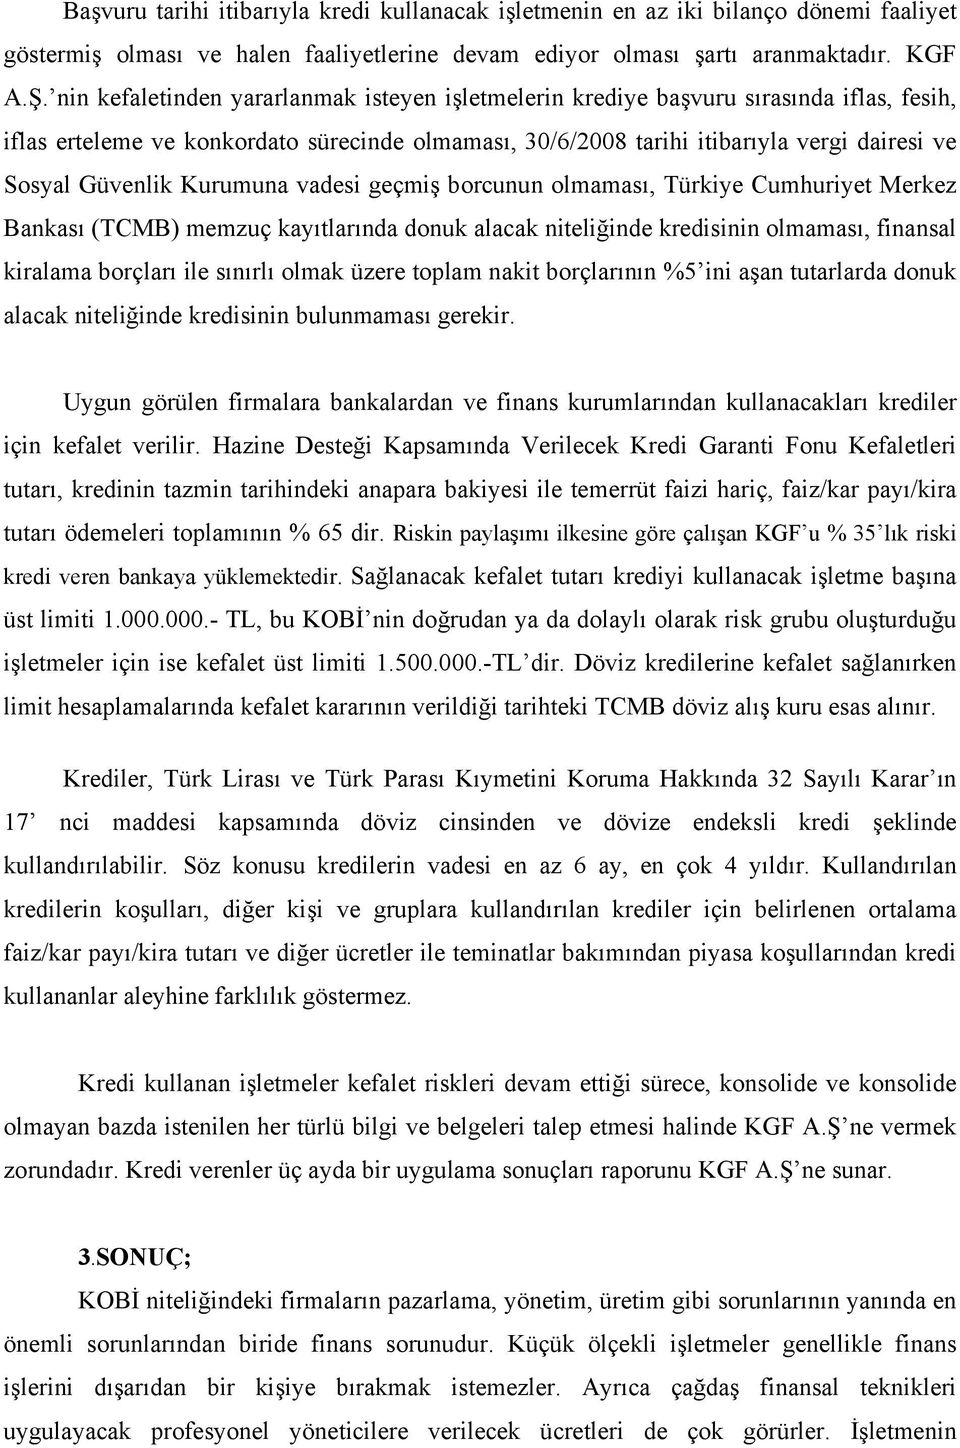 Kurumuna vadesi geçmiş borcunun olmaması, Türkiye Cumhuriyet Merkez Bankası (TCMB) memzuç kayıtlarında donuk alacak niteliğinde kredisinin olmaması, finansal kiralama borçları ile sınırlı olmak üzere